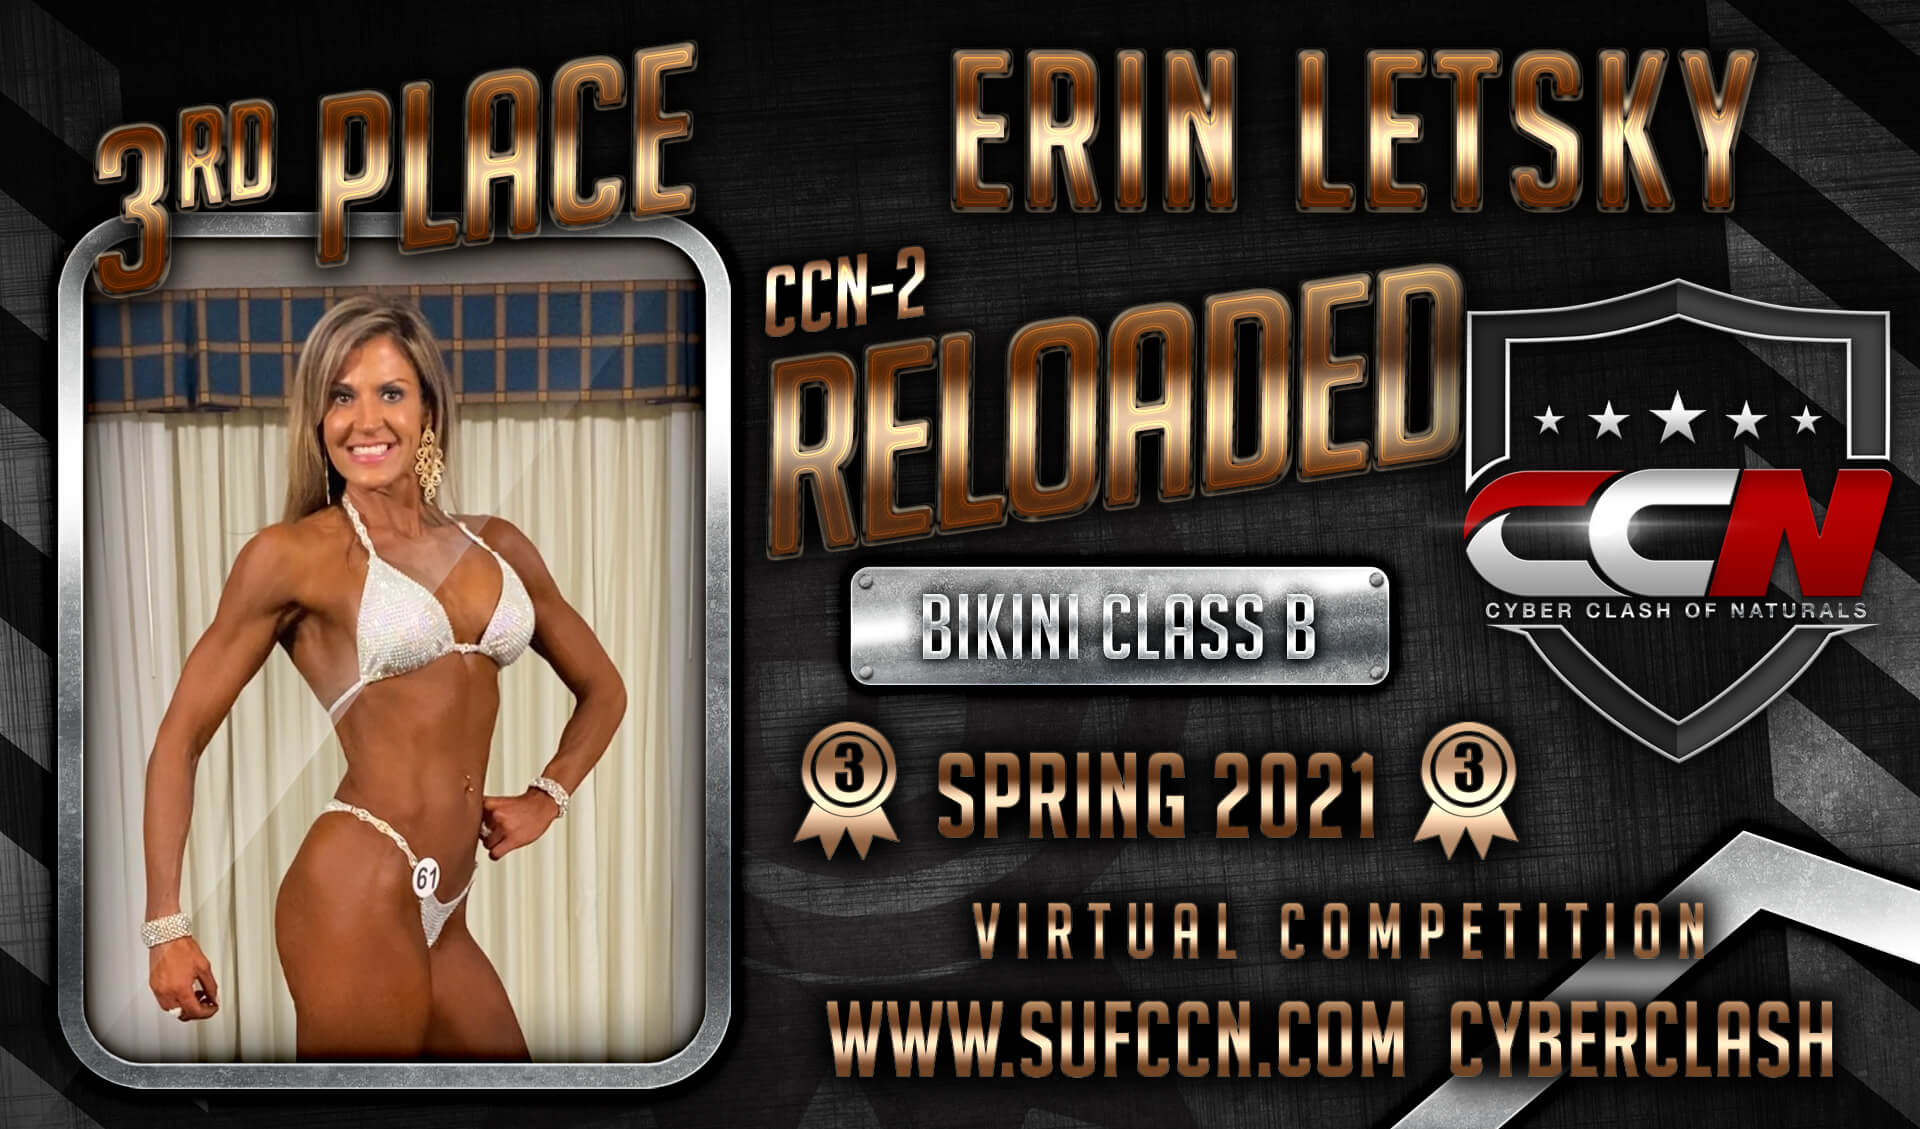 Erin-L-3rd-place-banner-Bikini-Class-B